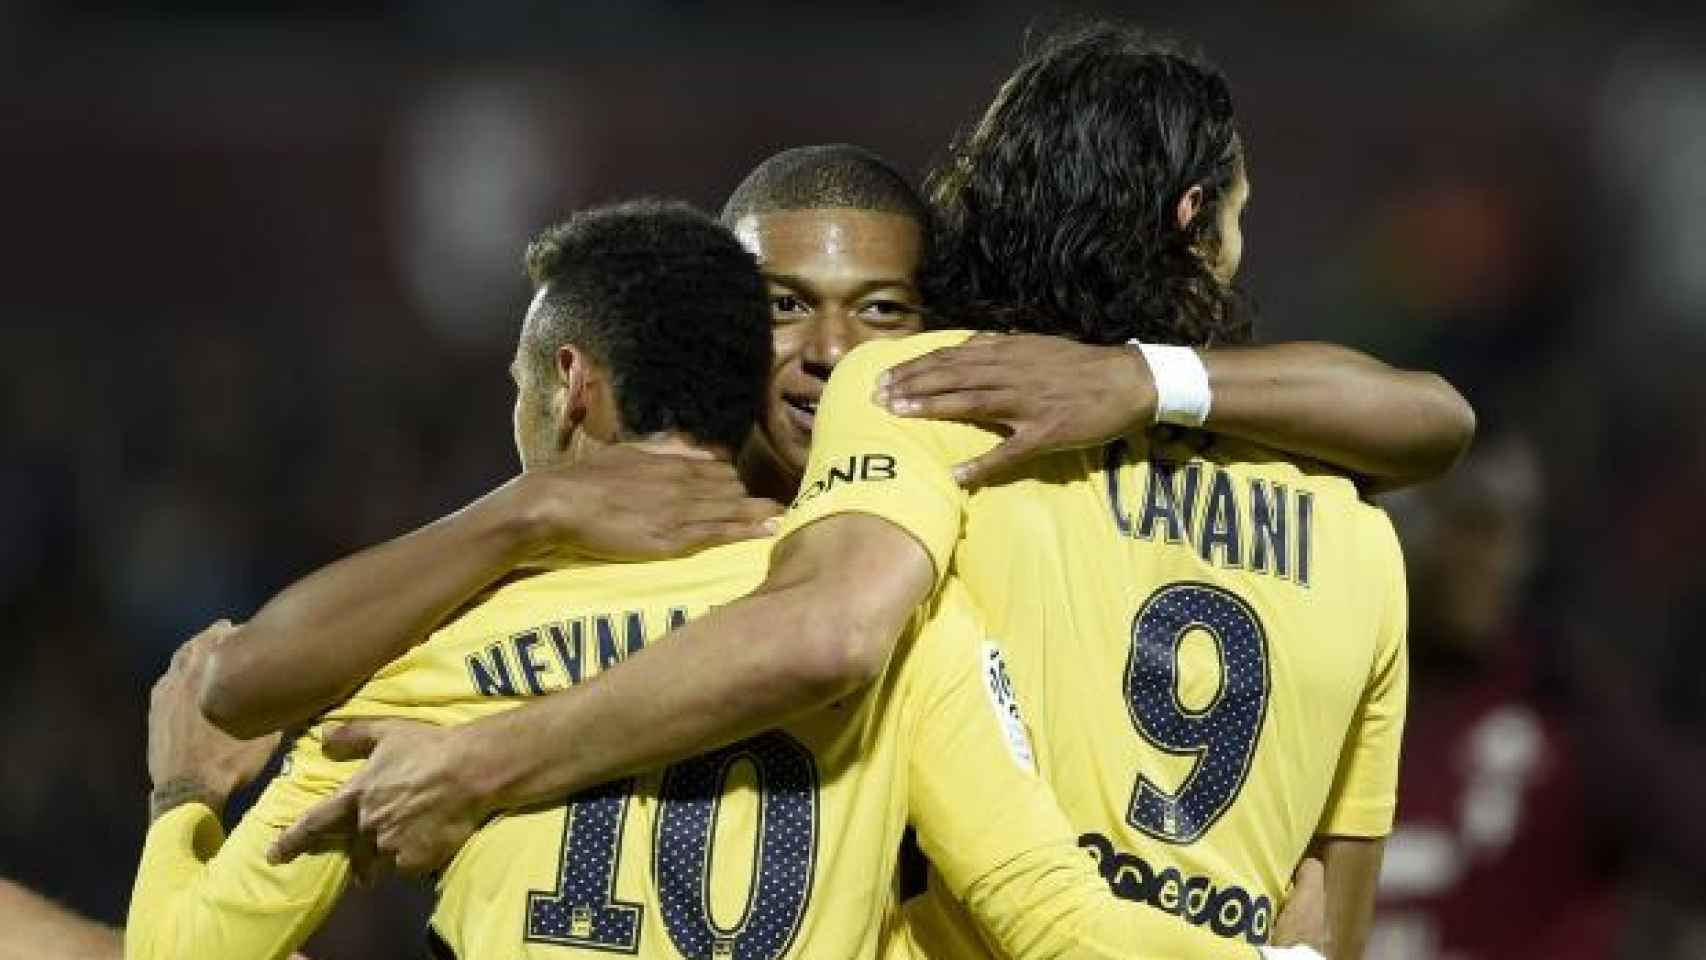 El MCN (Mbappe, Cavani, Neymar) contra Metz